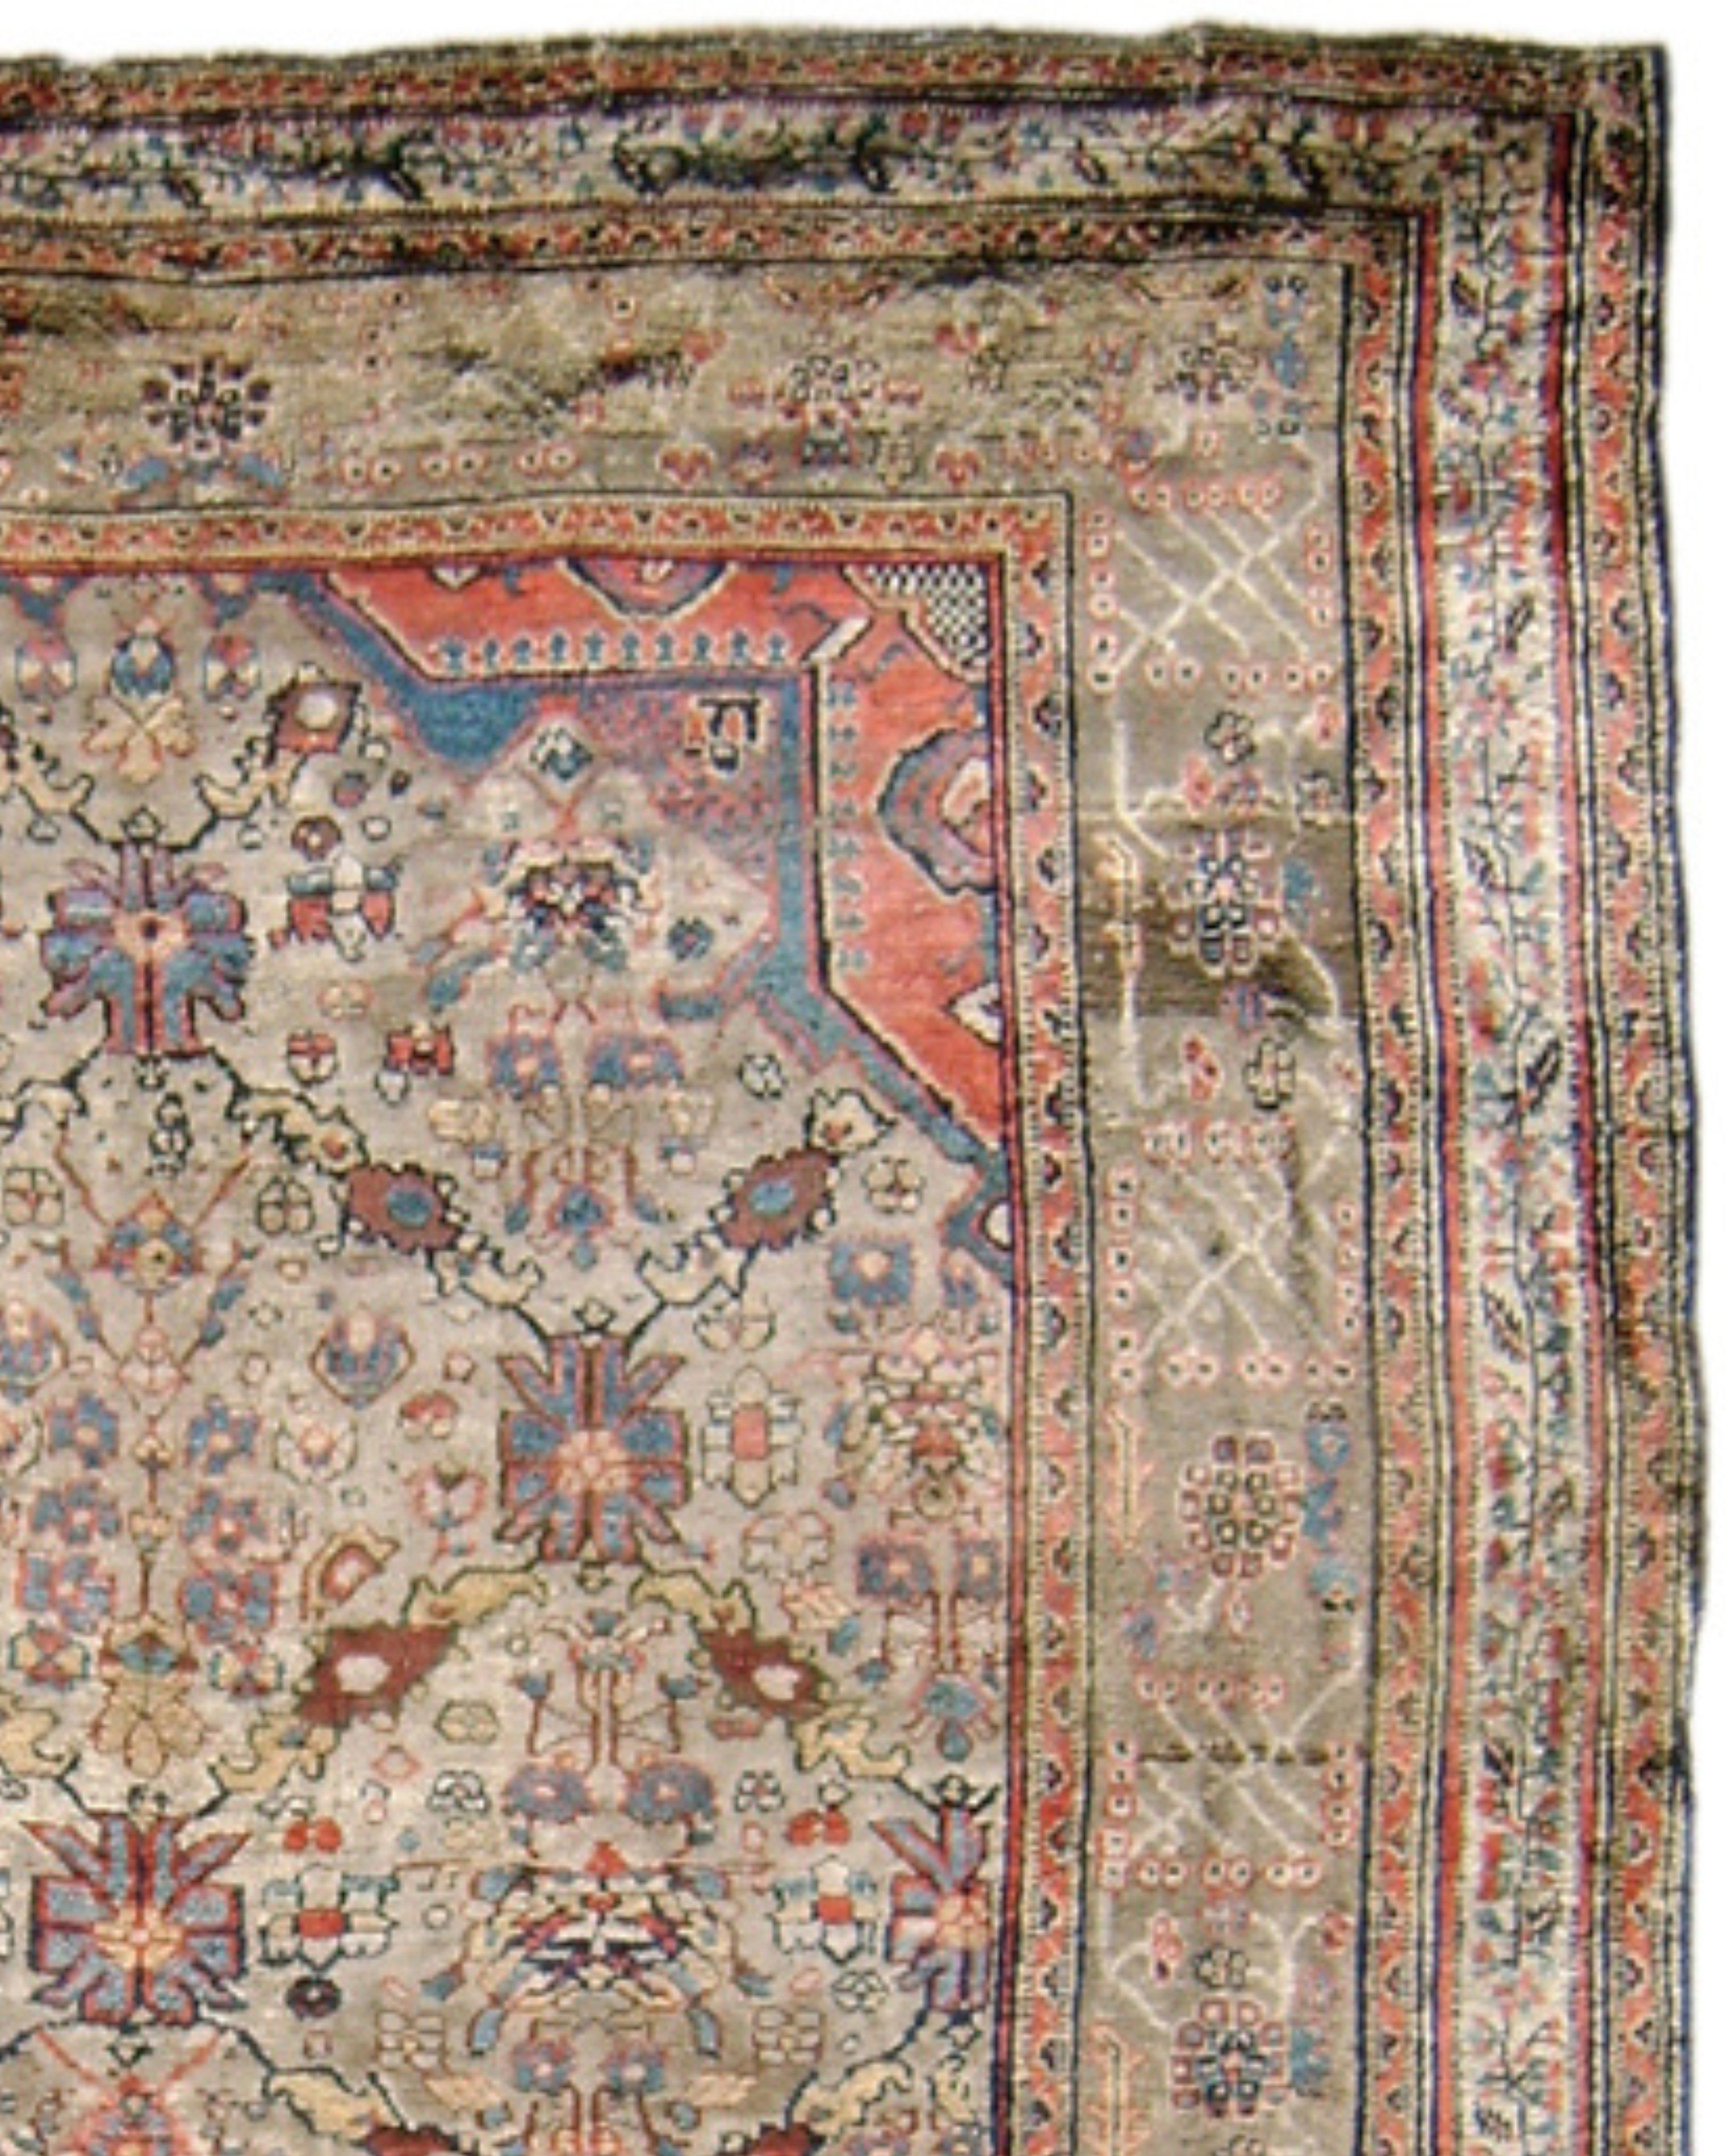 Seidenheriz-Teppich, Mitte 19. Jahrhundert

Zusätzliche Informationen:
Abmessungen: 4'4